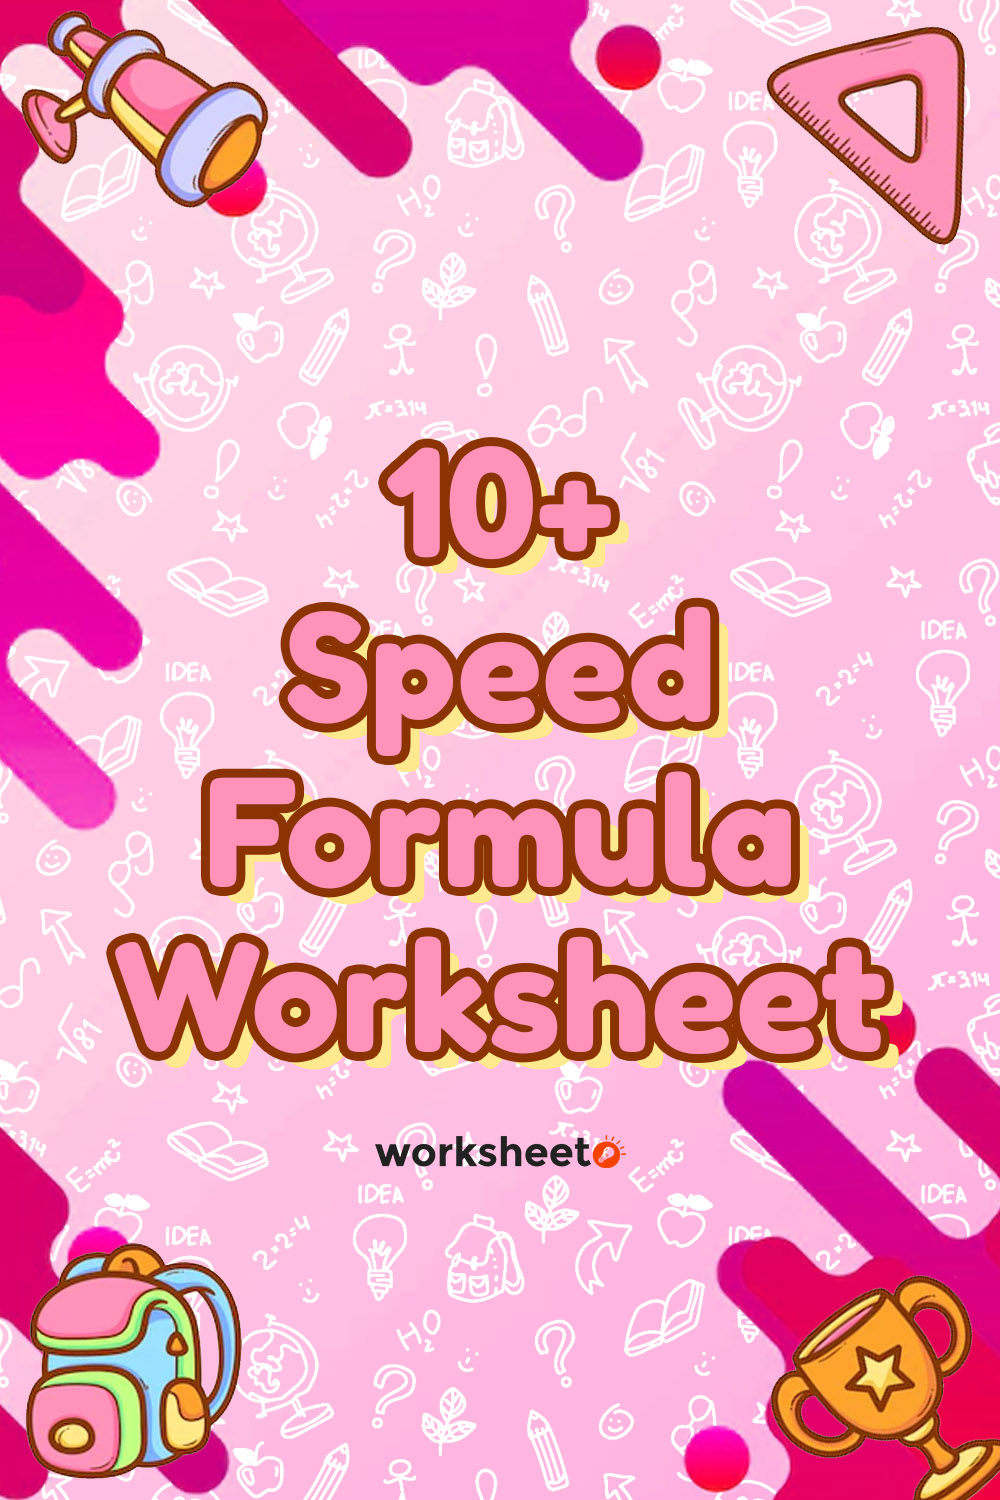 17 Images of Speed Formula Worksheet